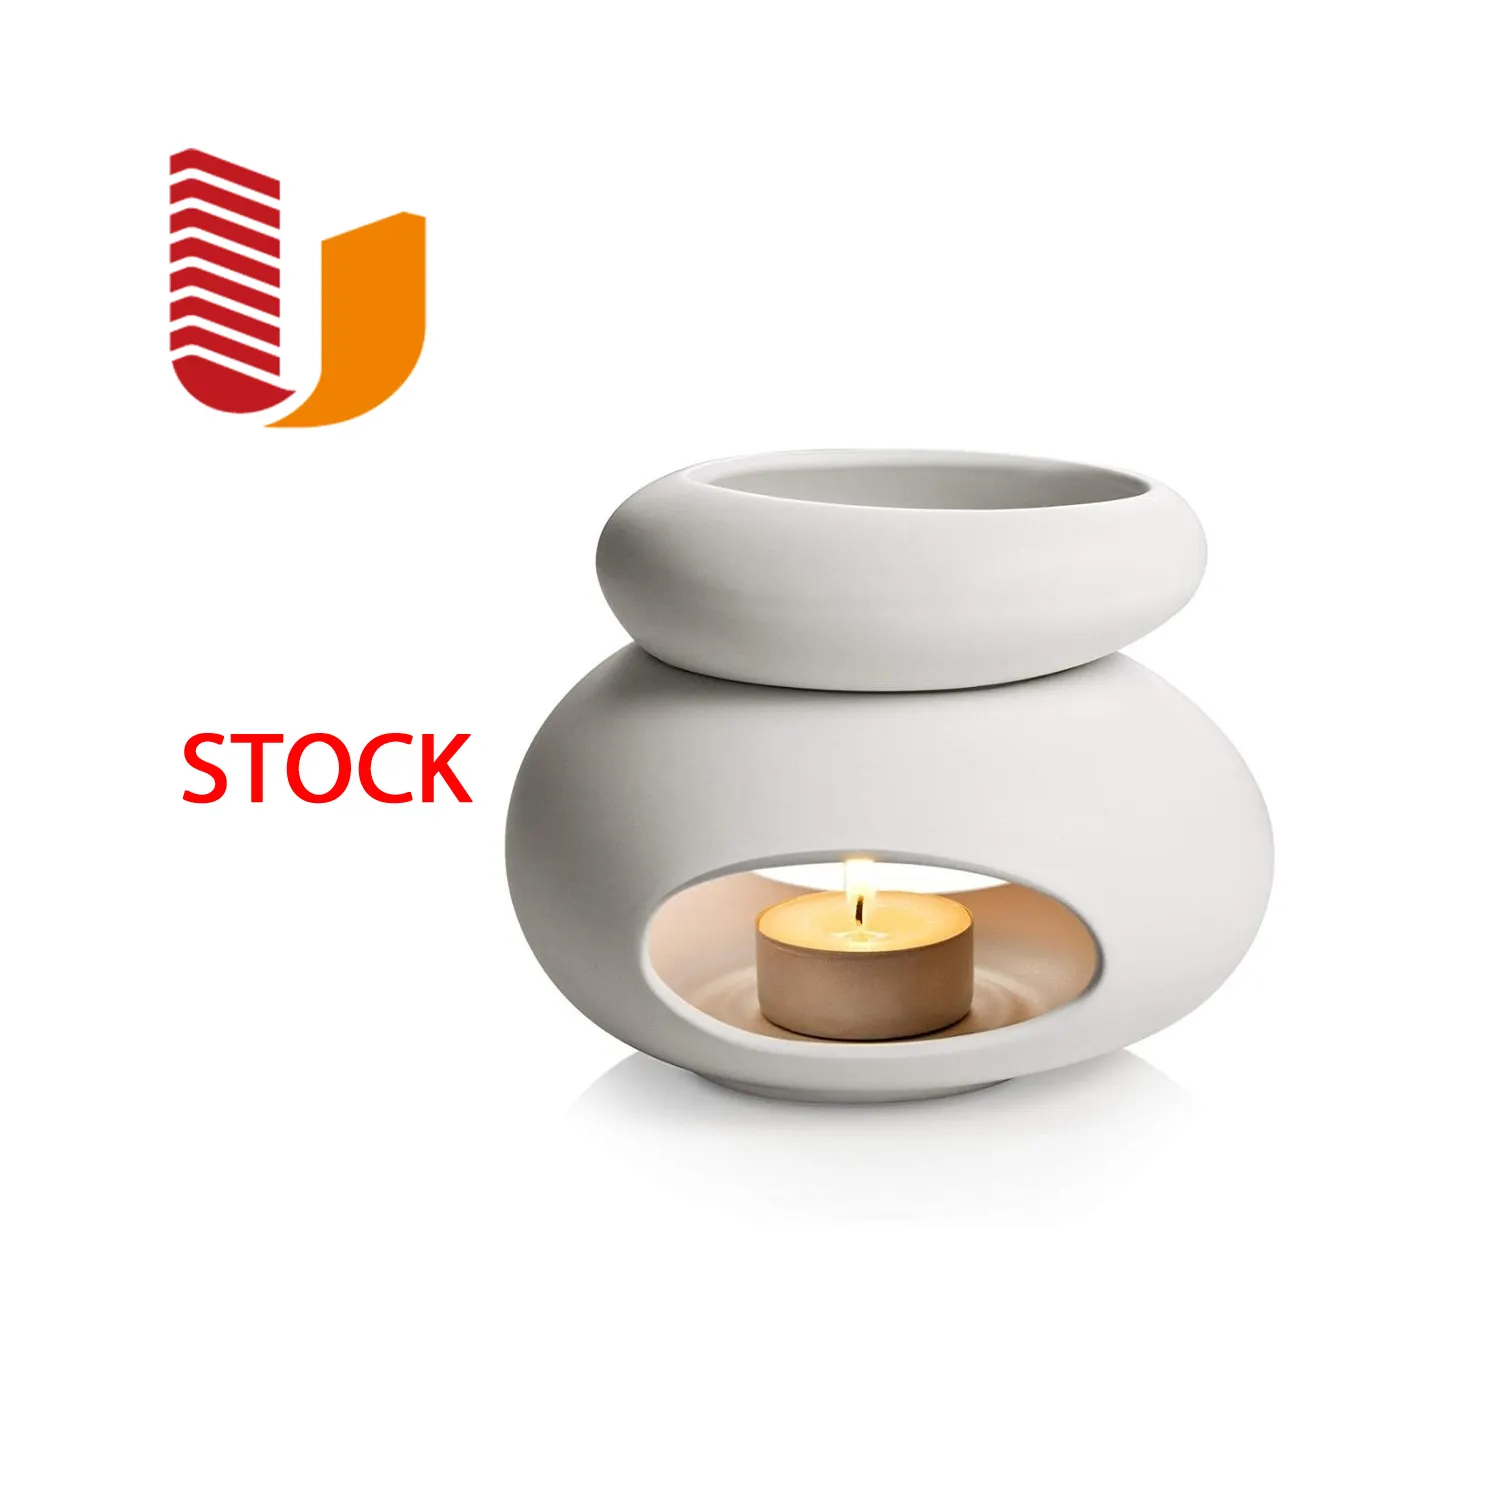 UOBOBO Luxus Weiß Schwarz Keramik wachs Schmelz brenner Essential Duft Keramik ölbrenner Home Wachs brenner zur Dekoration